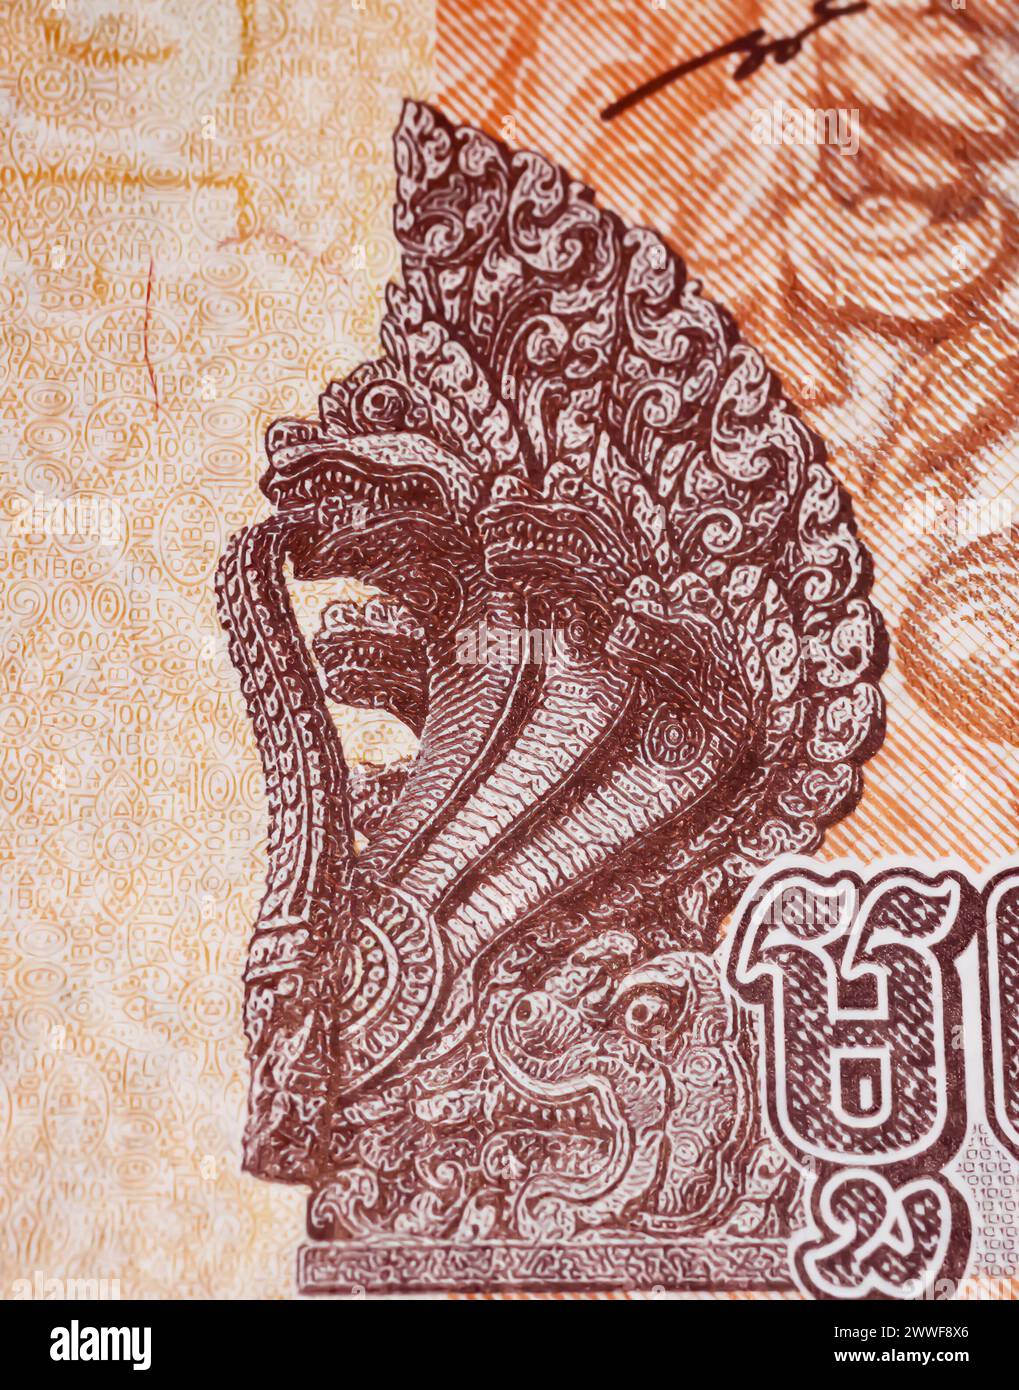 Statua della testa di serpente mitica di Naga sulla banconota in valuta cambogiana Riel (focalizzata sul centro) Foto Stock